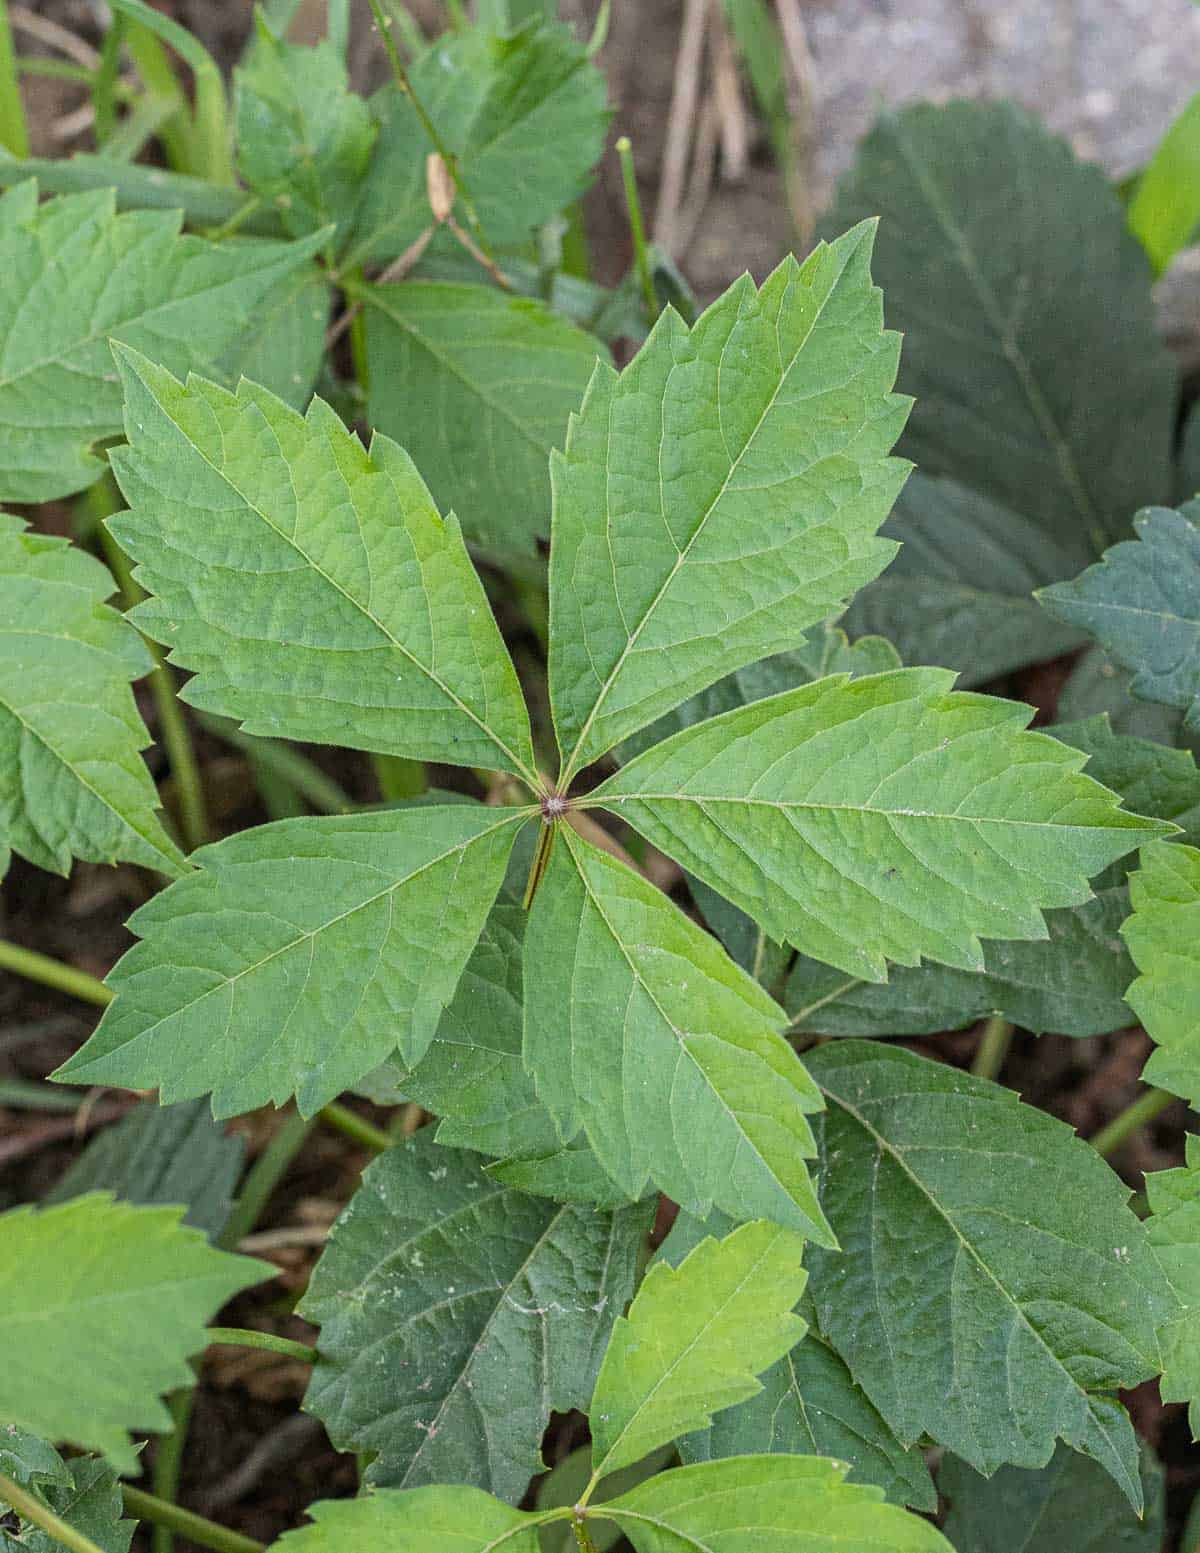 Virginia creeper or Parthenocissus quinquefolia leaves in the spring. 